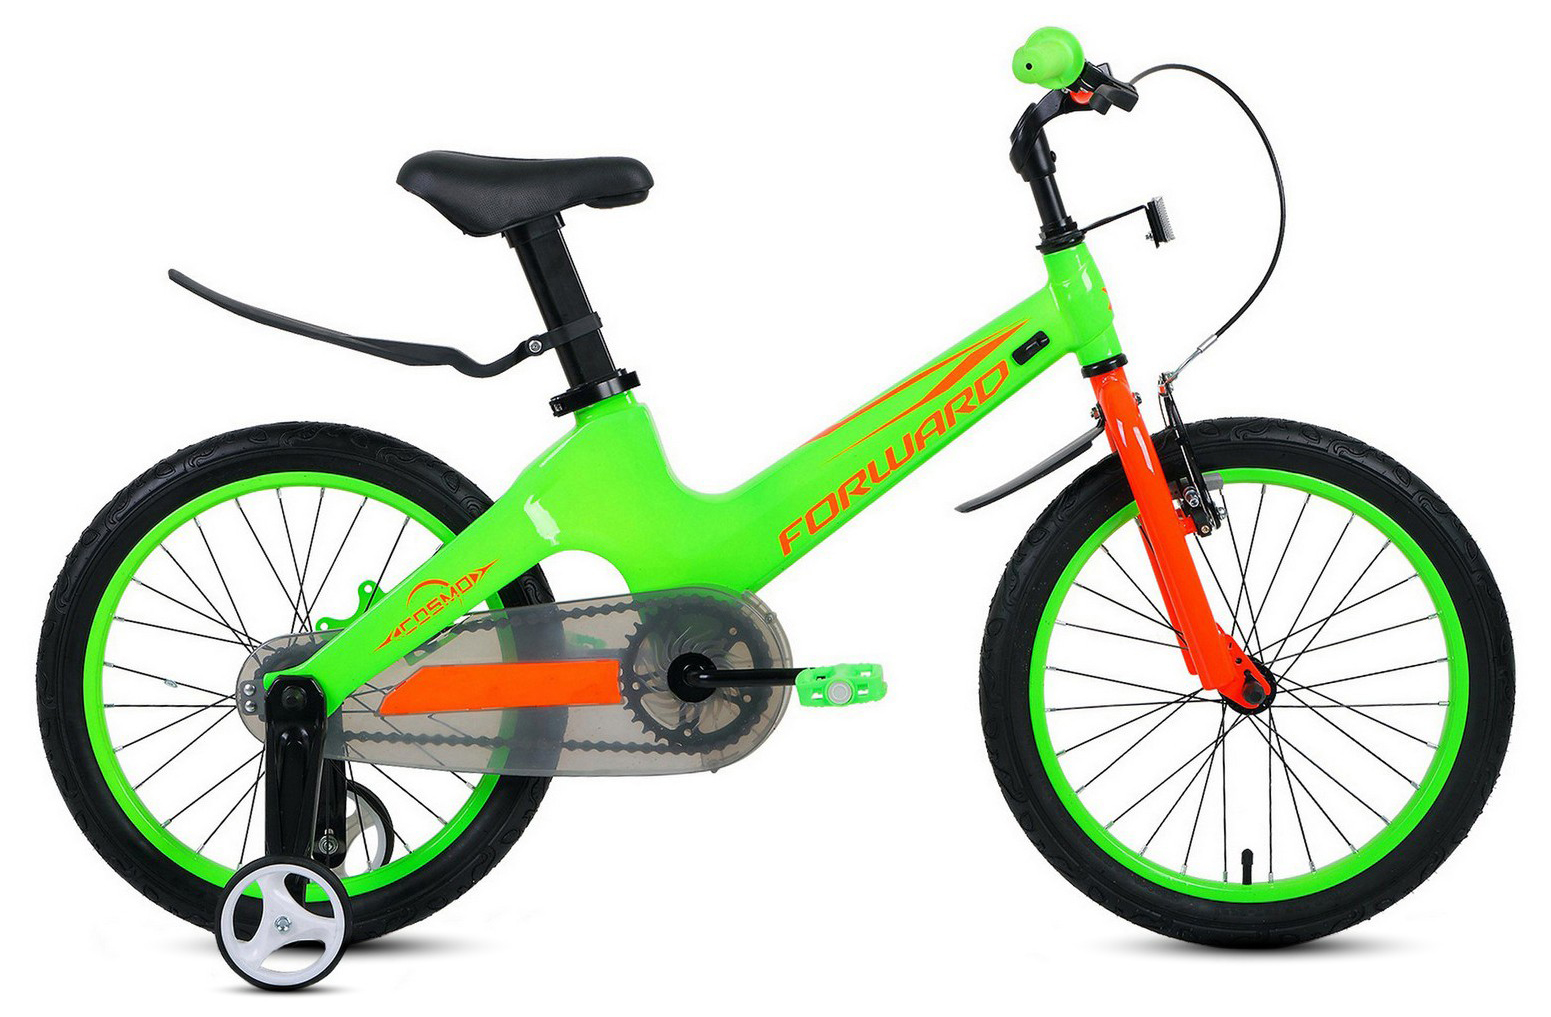  Отзывы о Детском велосипеде Forward Cosmo 18 (2021) 2021